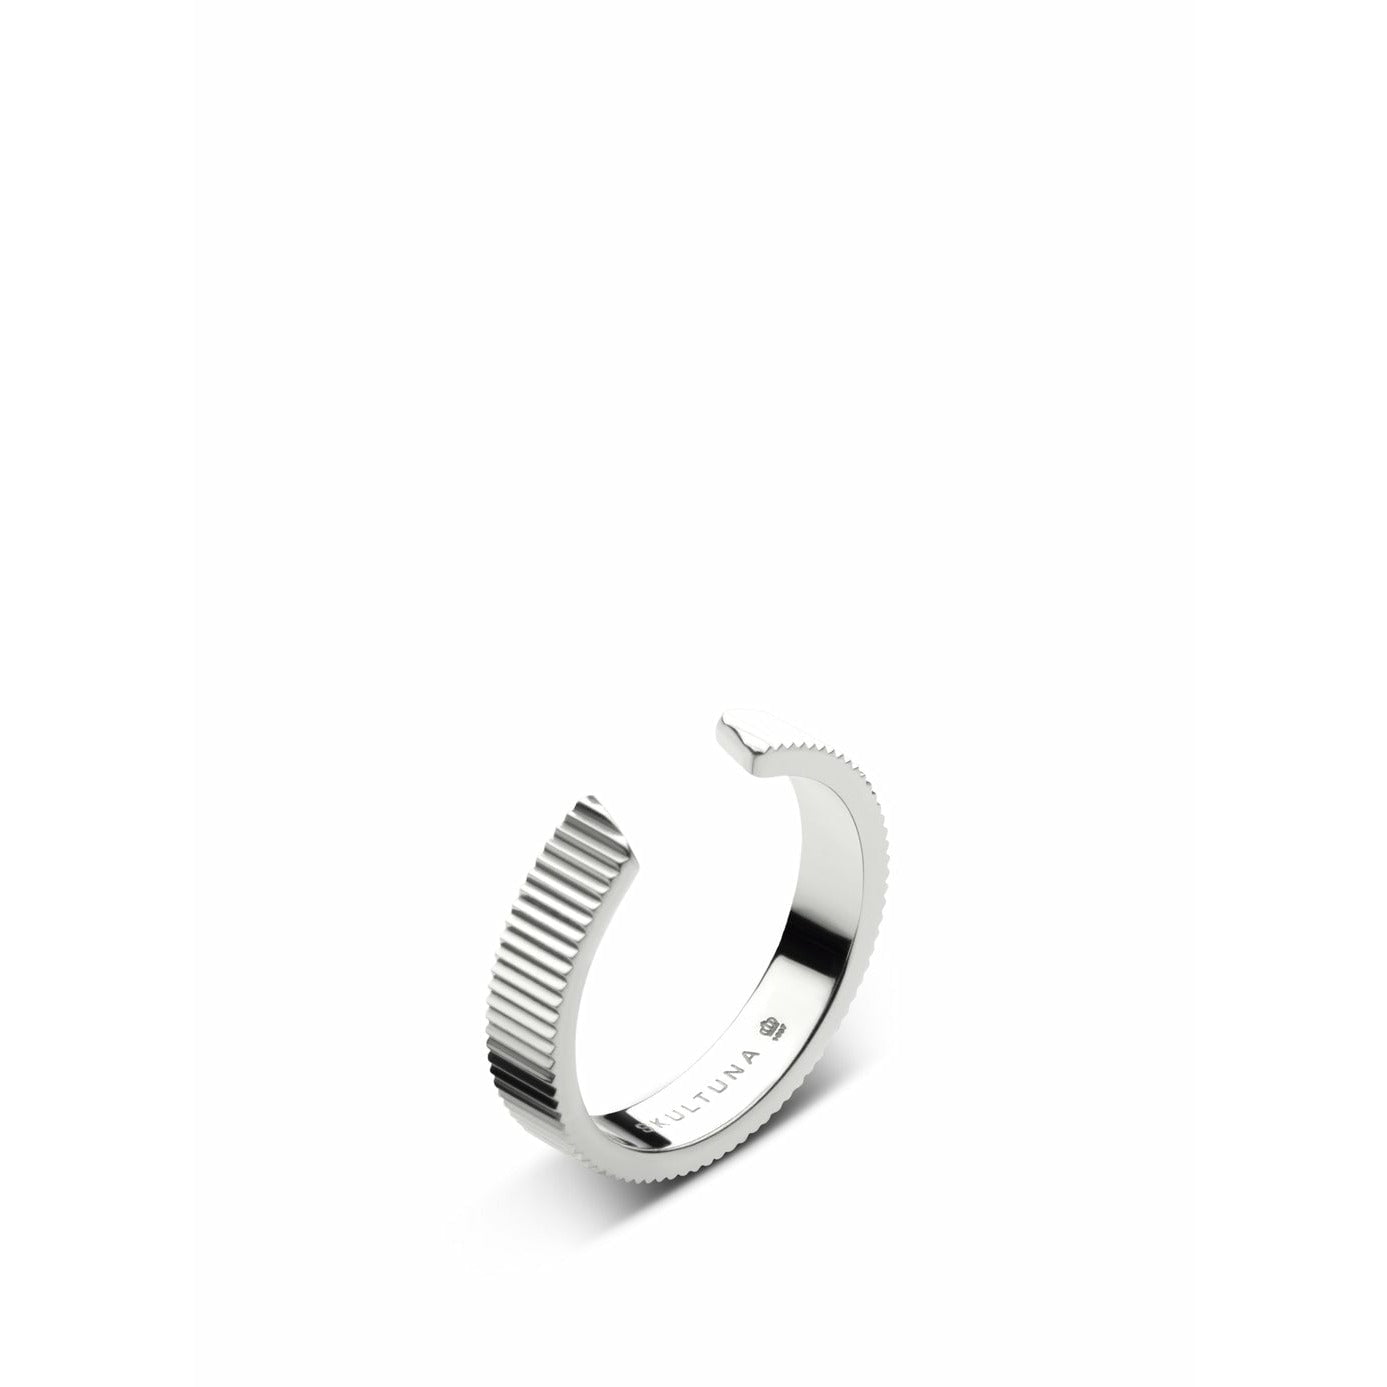 Skultuna gerippter Ring mittelgroßen kleinen polierten Stahl Ø1,6 cm